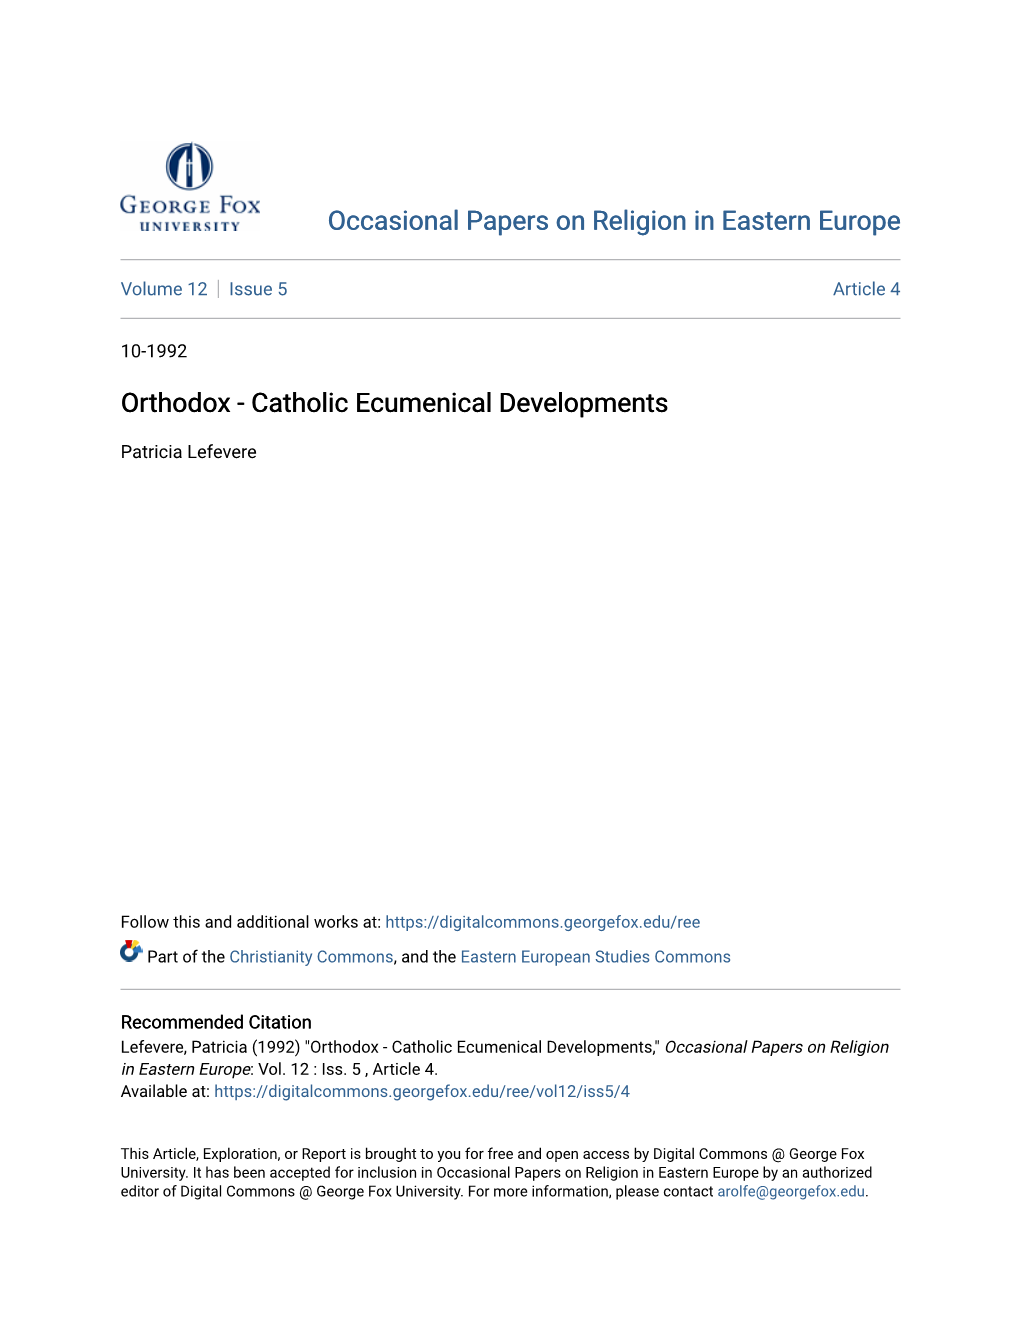 Catholic Ecumenical Developments